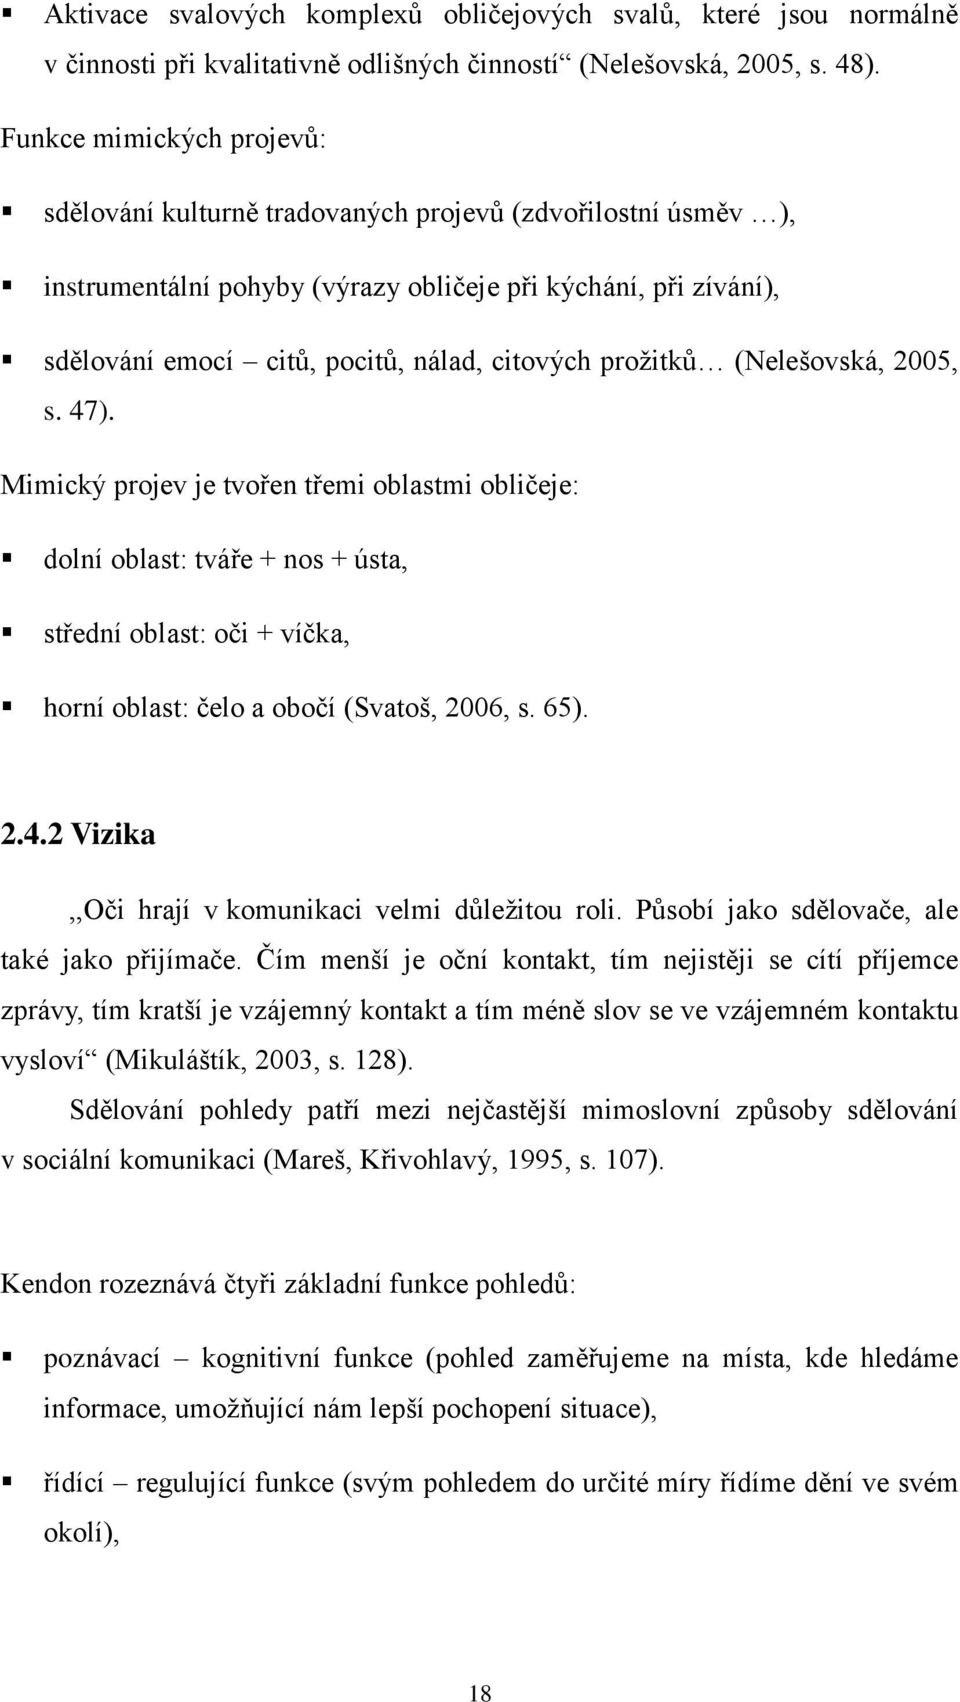 proţitků (Nelešovská, 2005, s. 47). Mimický projev je tvořen třemi oblastmi obličeje: dolní oblast: tváře + nos + ústa, střední oblast: oči + víčka, horní oblast: čelo a obočí (Svatoš, 2006, s. 65).